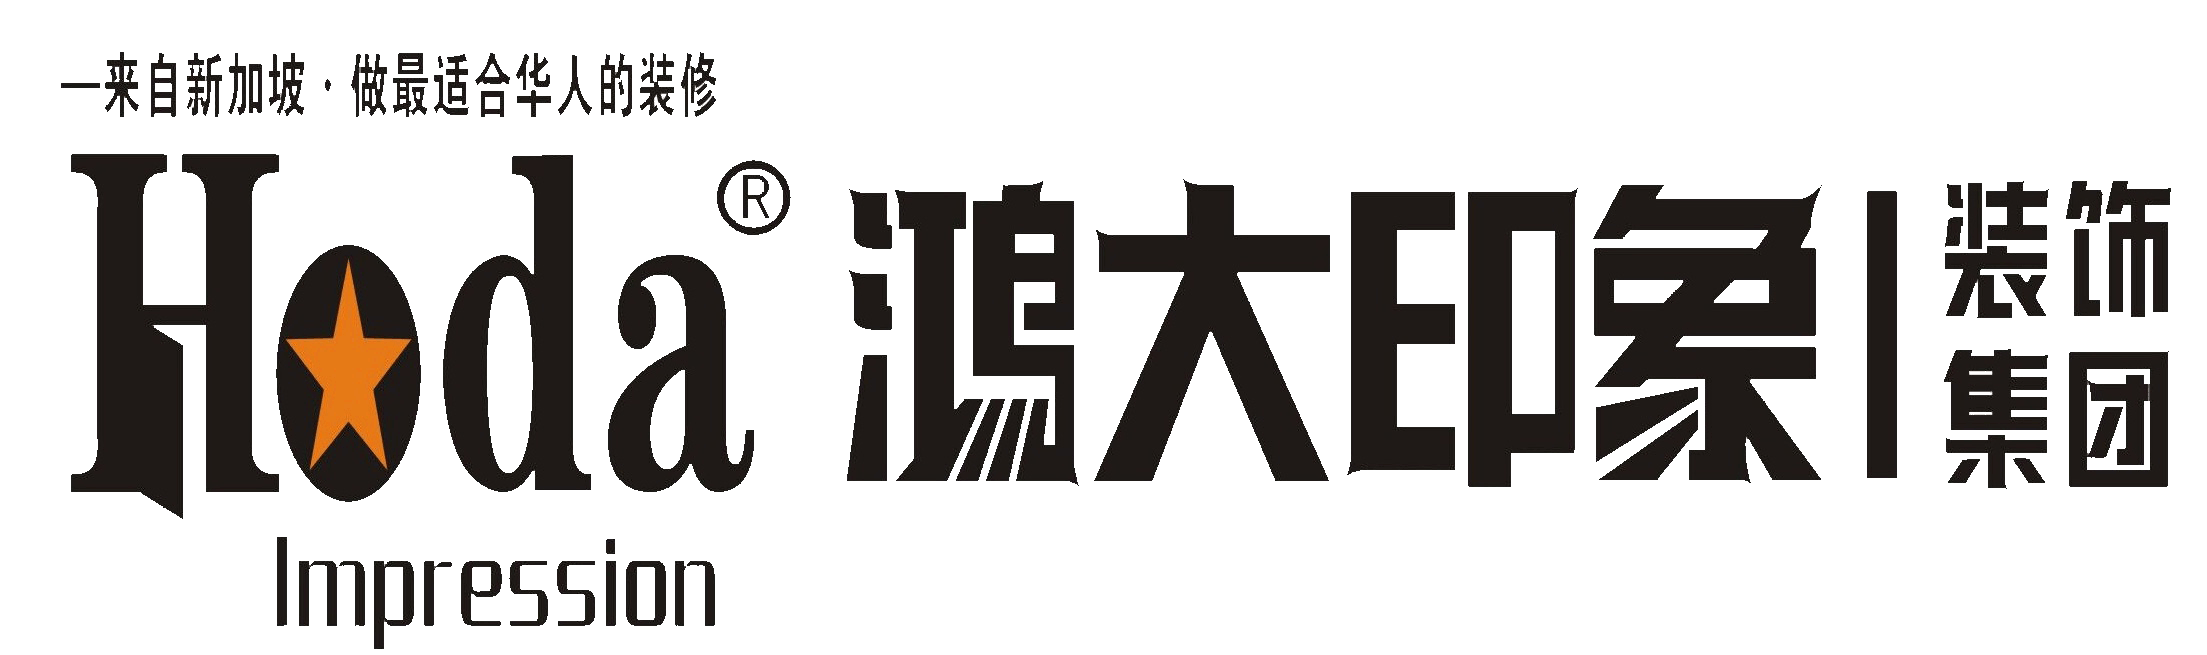 鸿大印象装饰集团logo